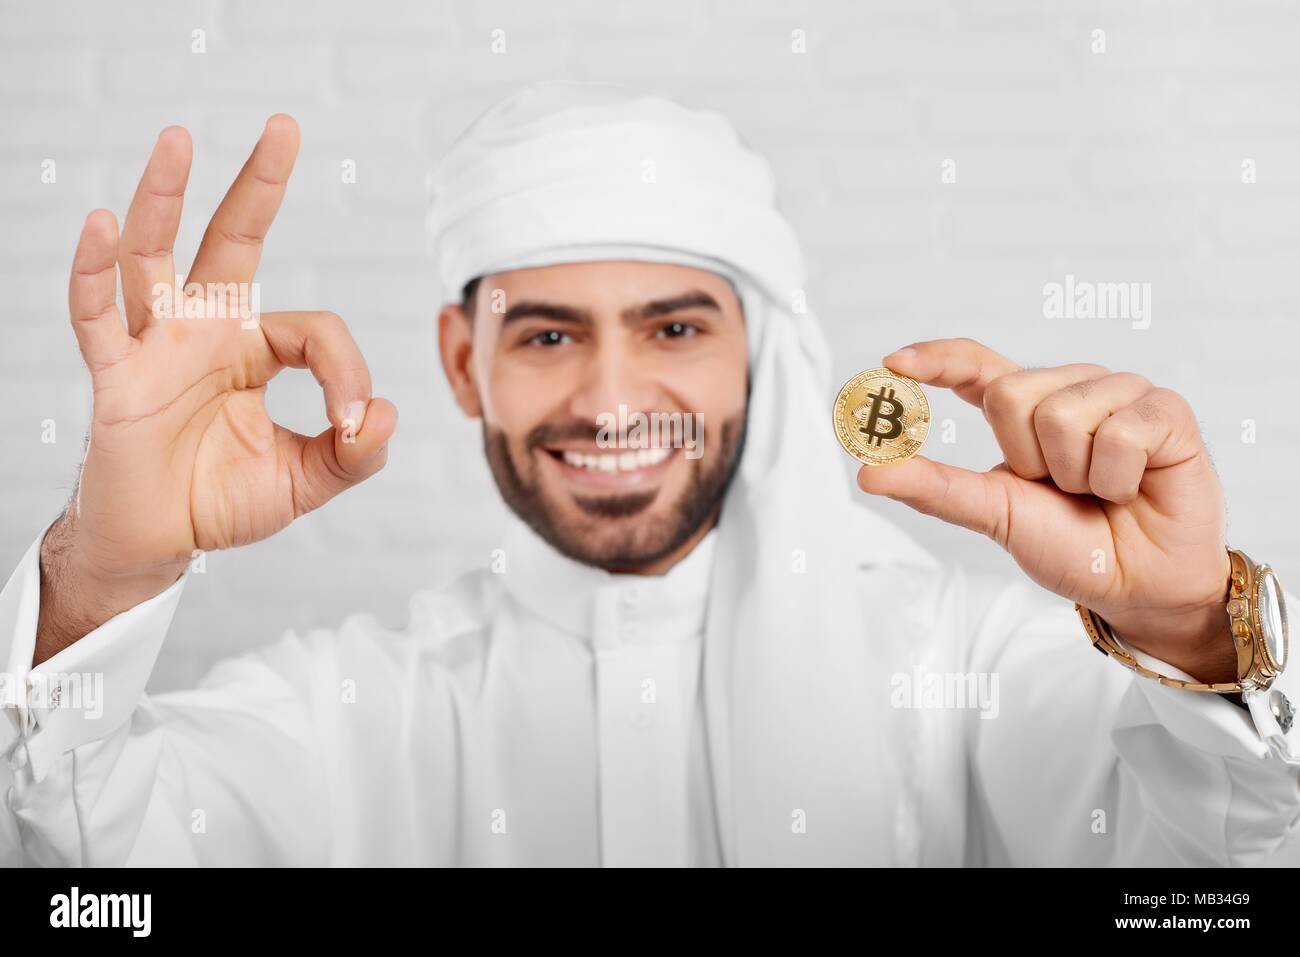 Studio Portrait of a smiling man arabe et bitcoin permet a l'air très heureux, debout sur fond blanc. Il porte le costume traditionnel arabe blanc,golden watch et les boutons de manchette. Banque D'Images